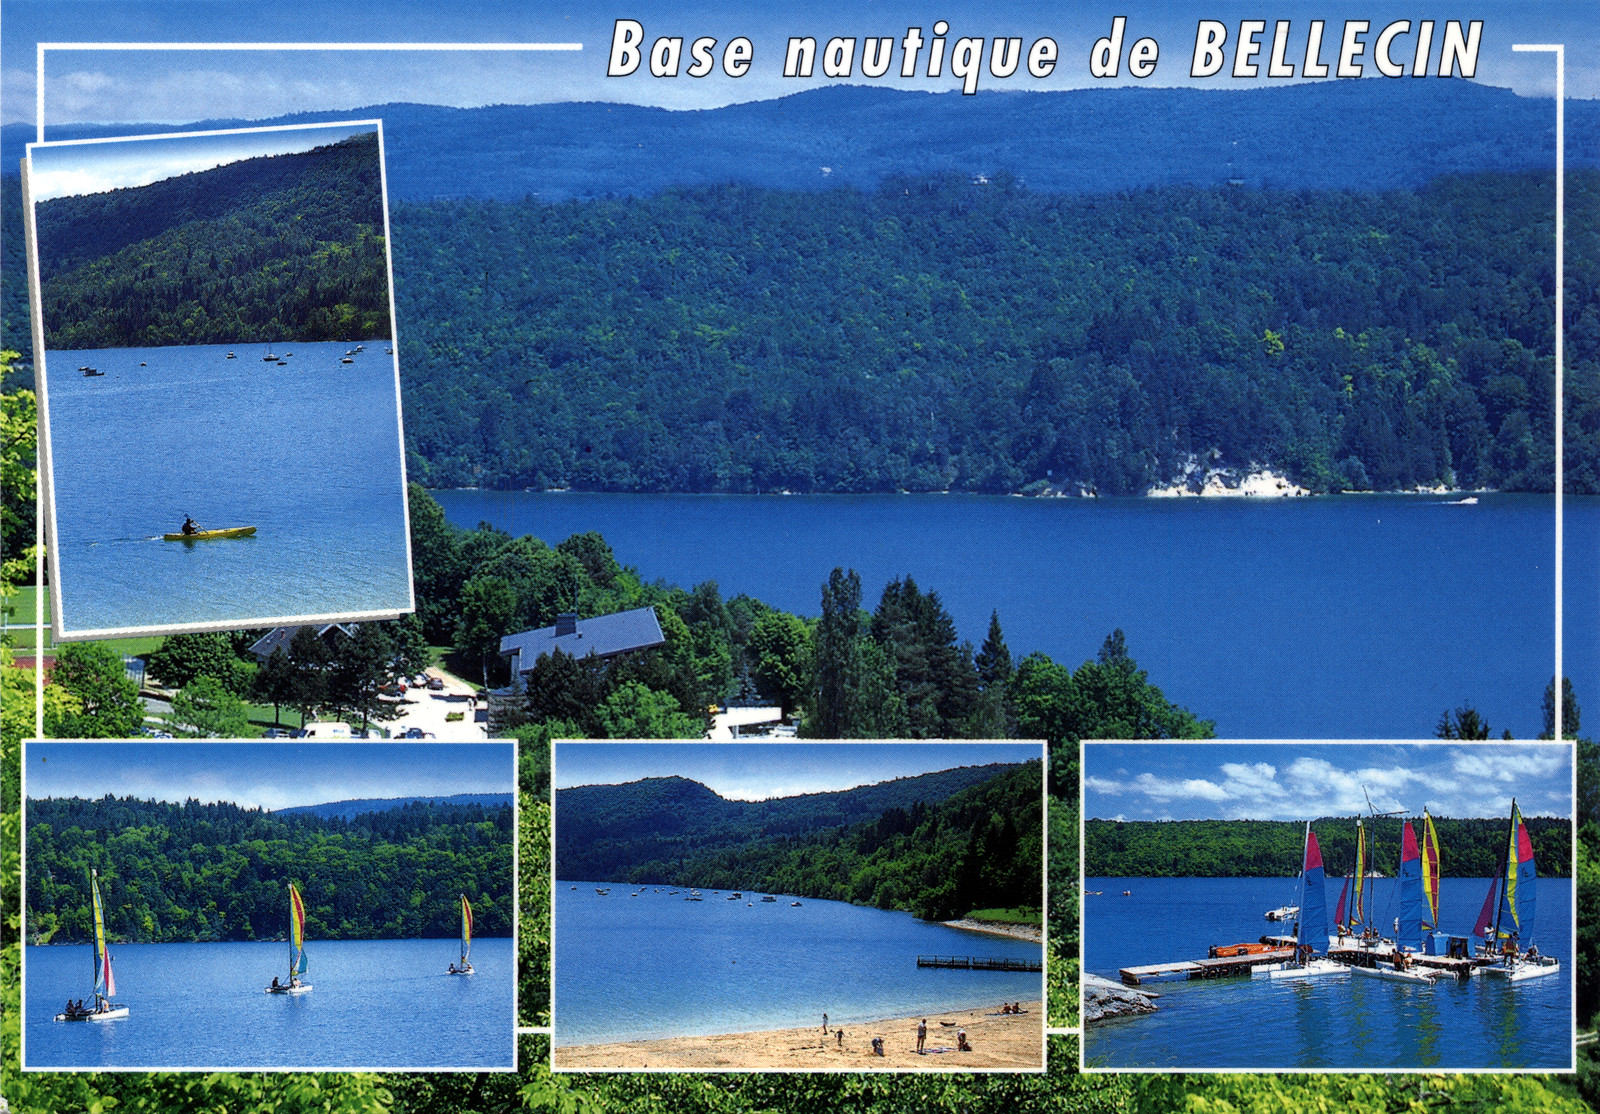 La base nautique de Bellecin - Le lac de Vouglans (Jura)